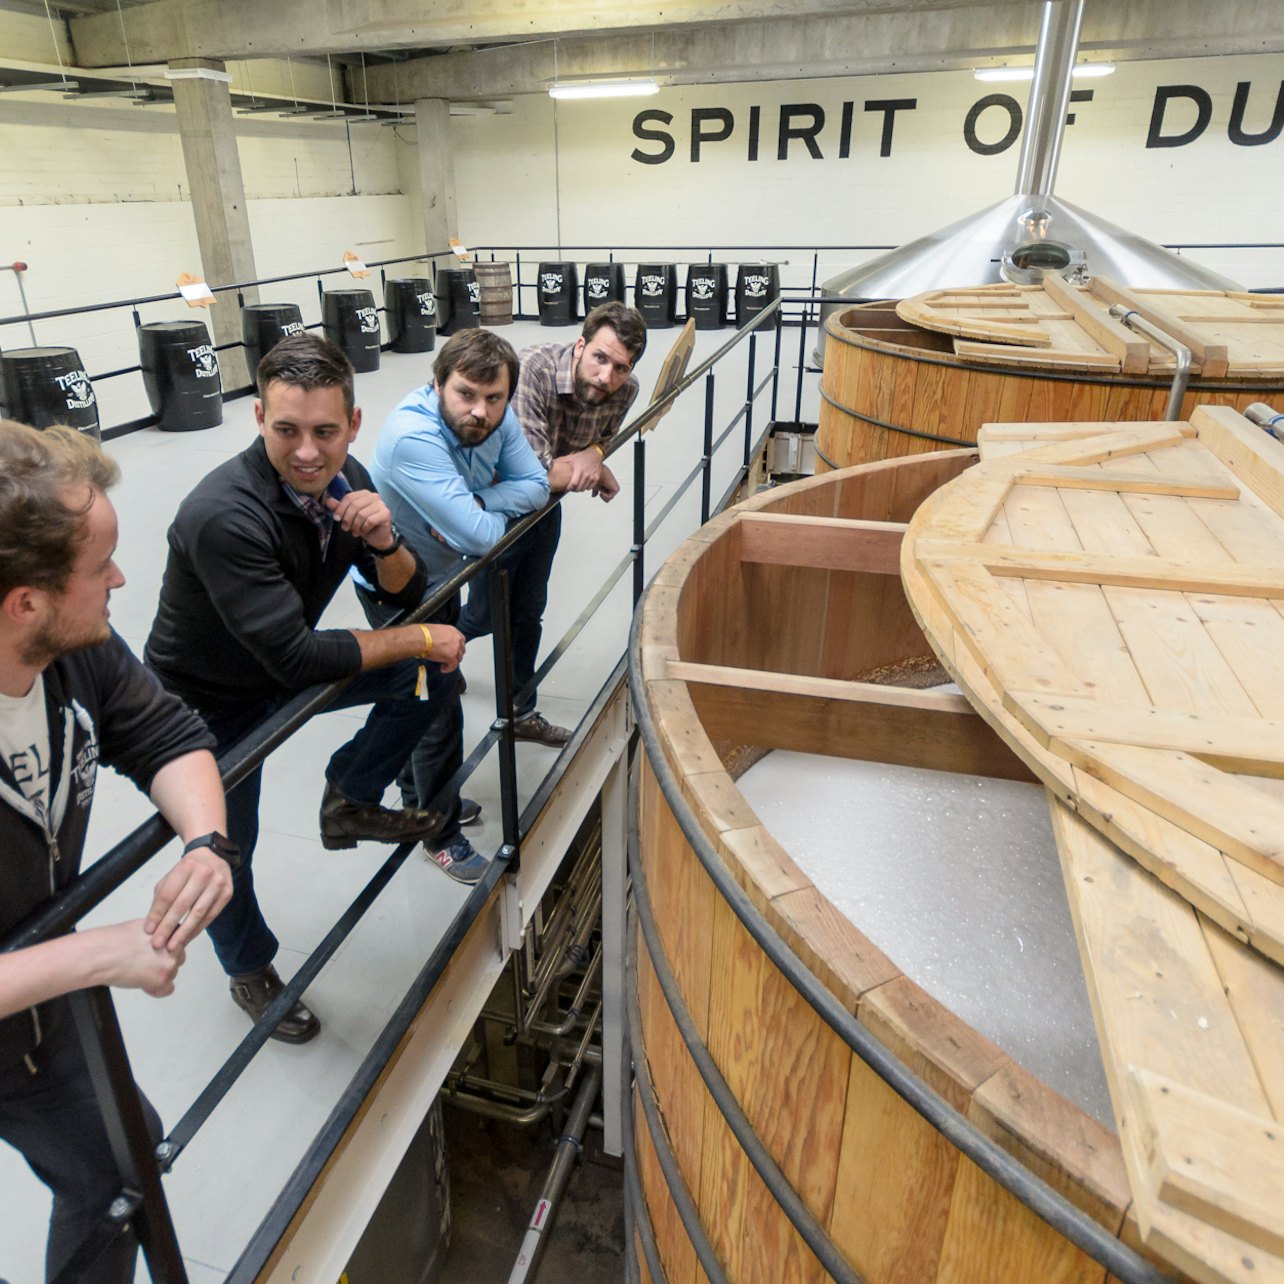 Teeling Whiskey Distillery :Degustação e Tour - Acomodações em Dublim